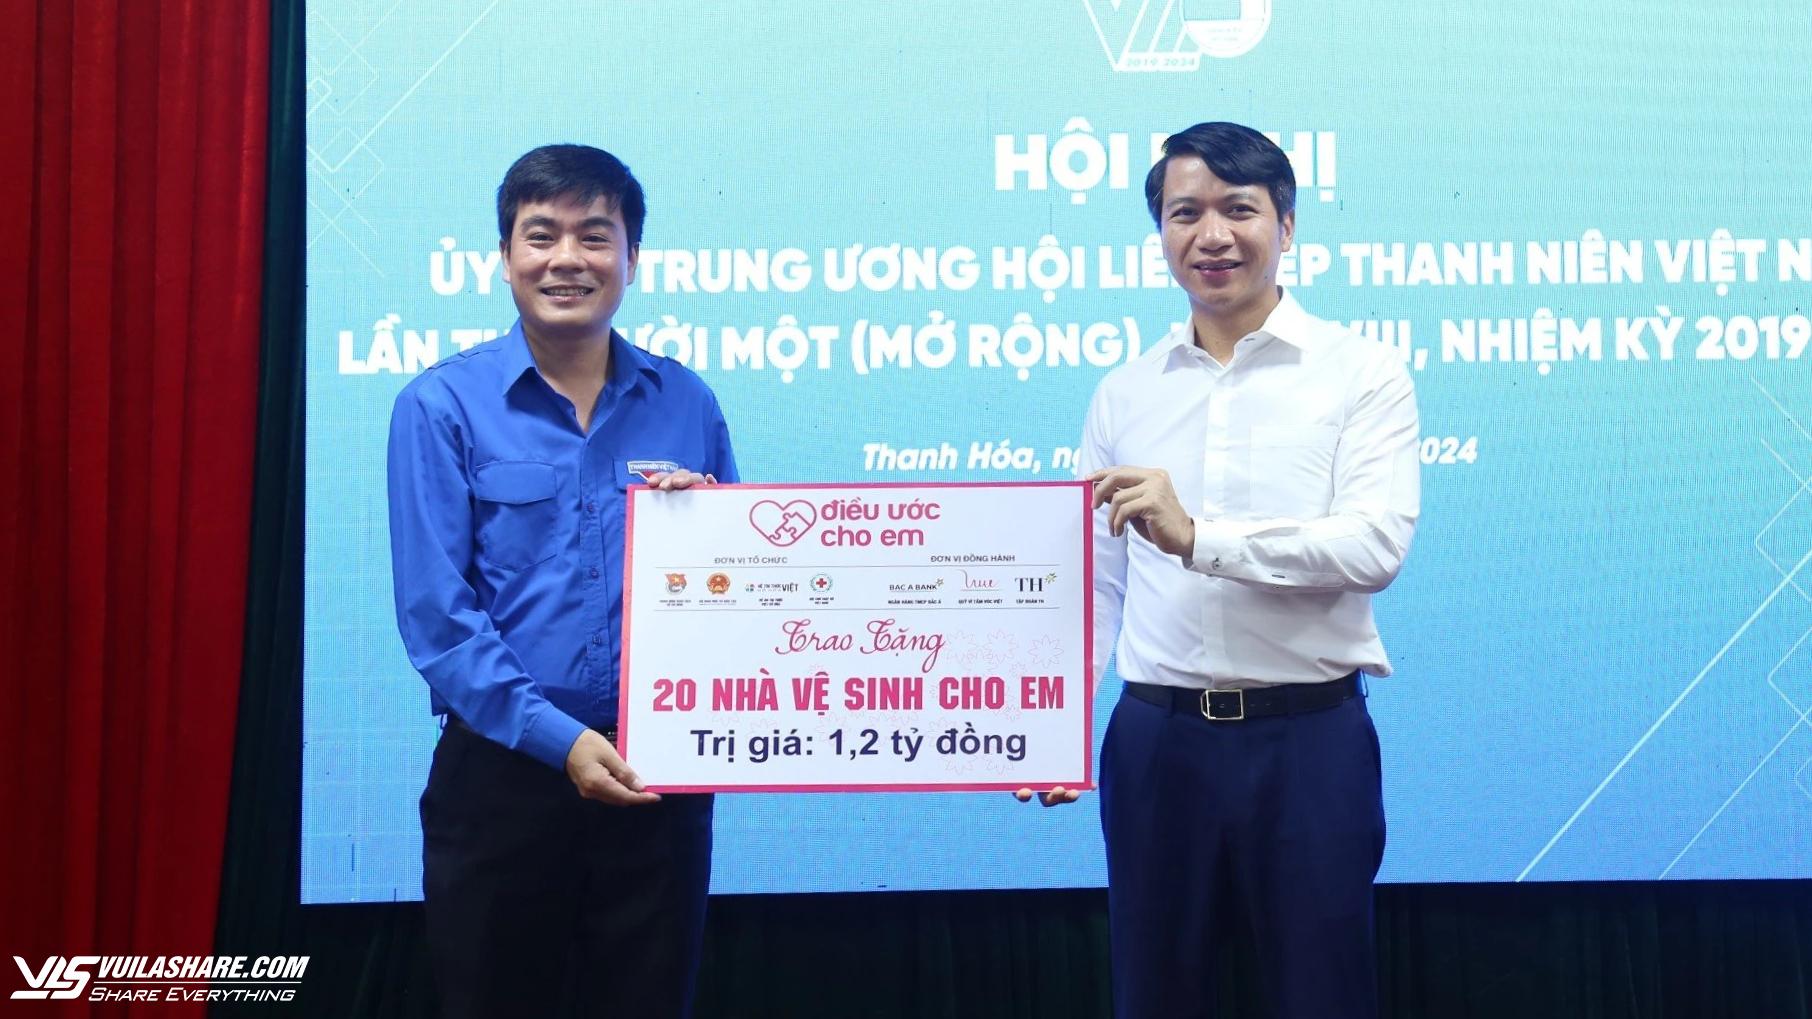 Hiệp thương bổ sung 3 Phó chủ tịch Hội Liên hiệp thanh niên Việt Nam- Ảnh 3.